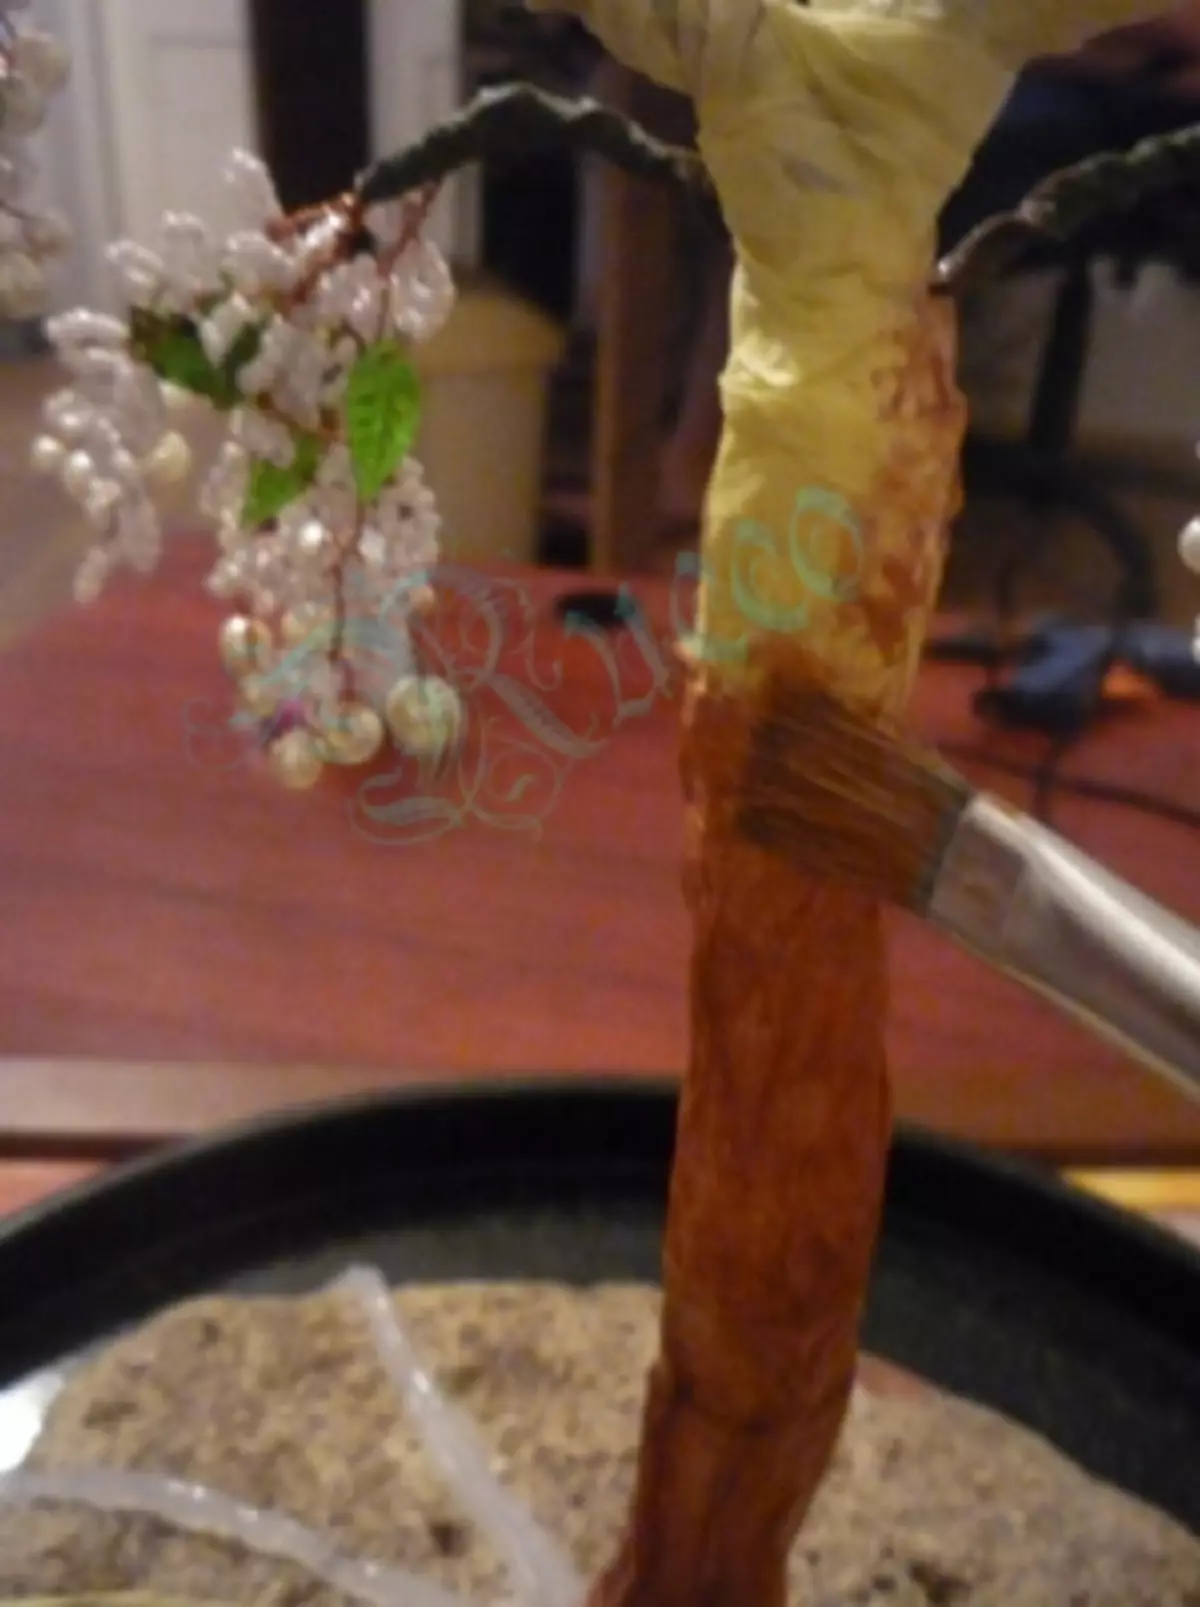 Murakkab daraxtlar uchun master-klass: wisteriya va marvarid yog'ochida foto va video